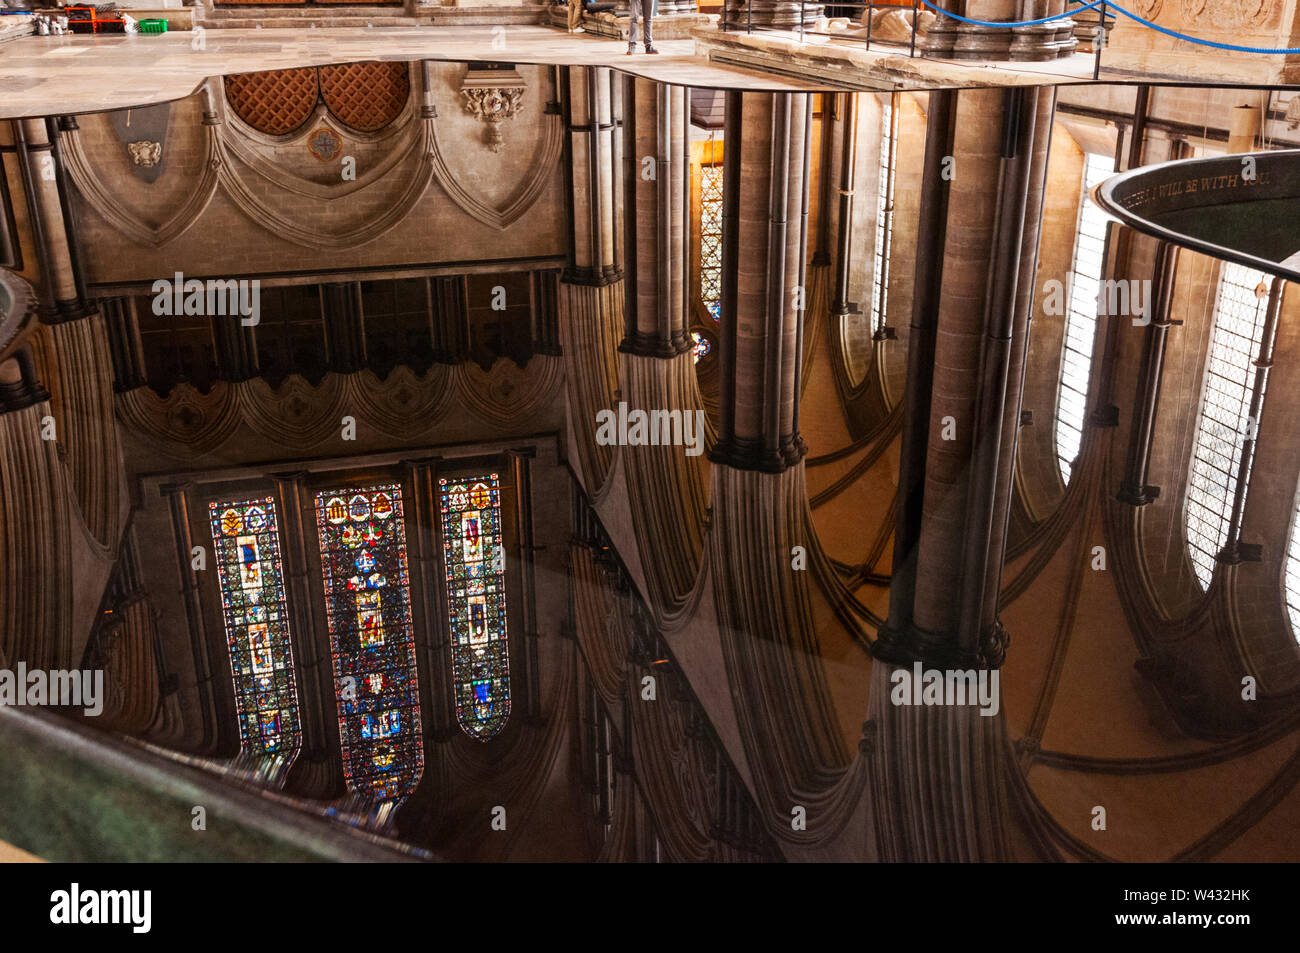 La cathédrale de Salisbury, Angleterre réflexion Banque D'Images